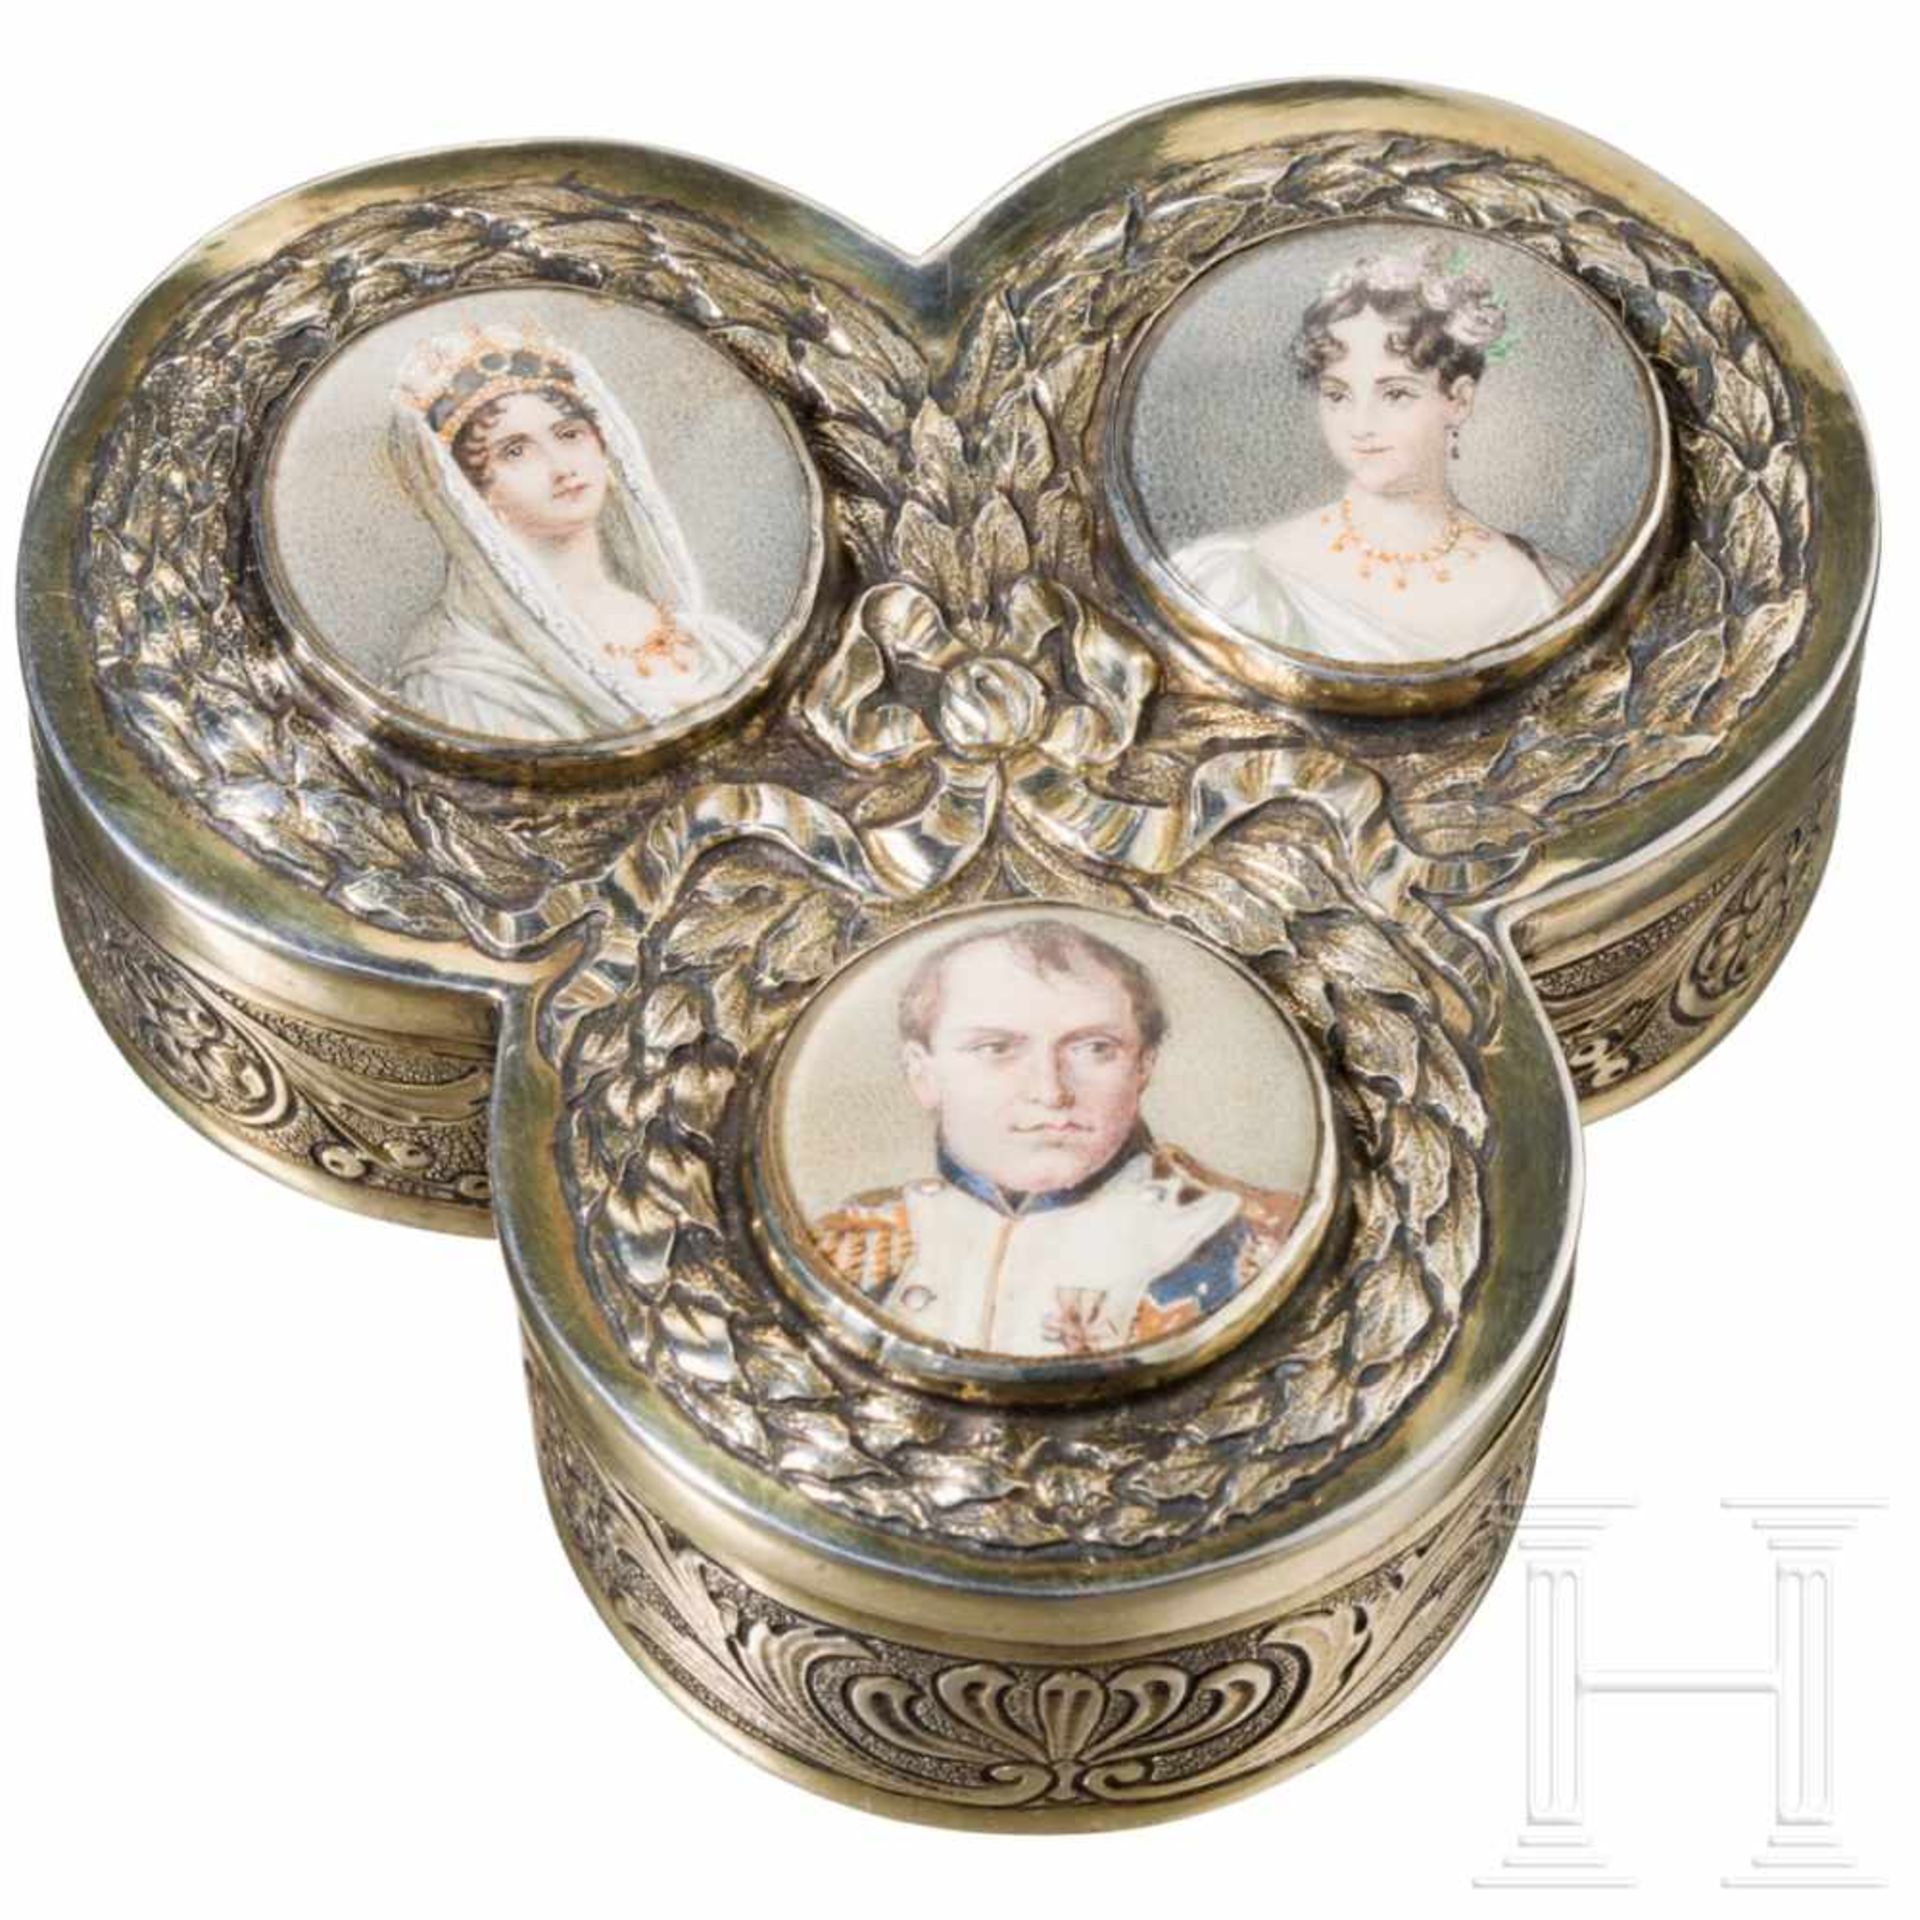 Emperor Napoleon I. Bonaparte - gilt silver box with three miniature portraits, circa 1820Silber